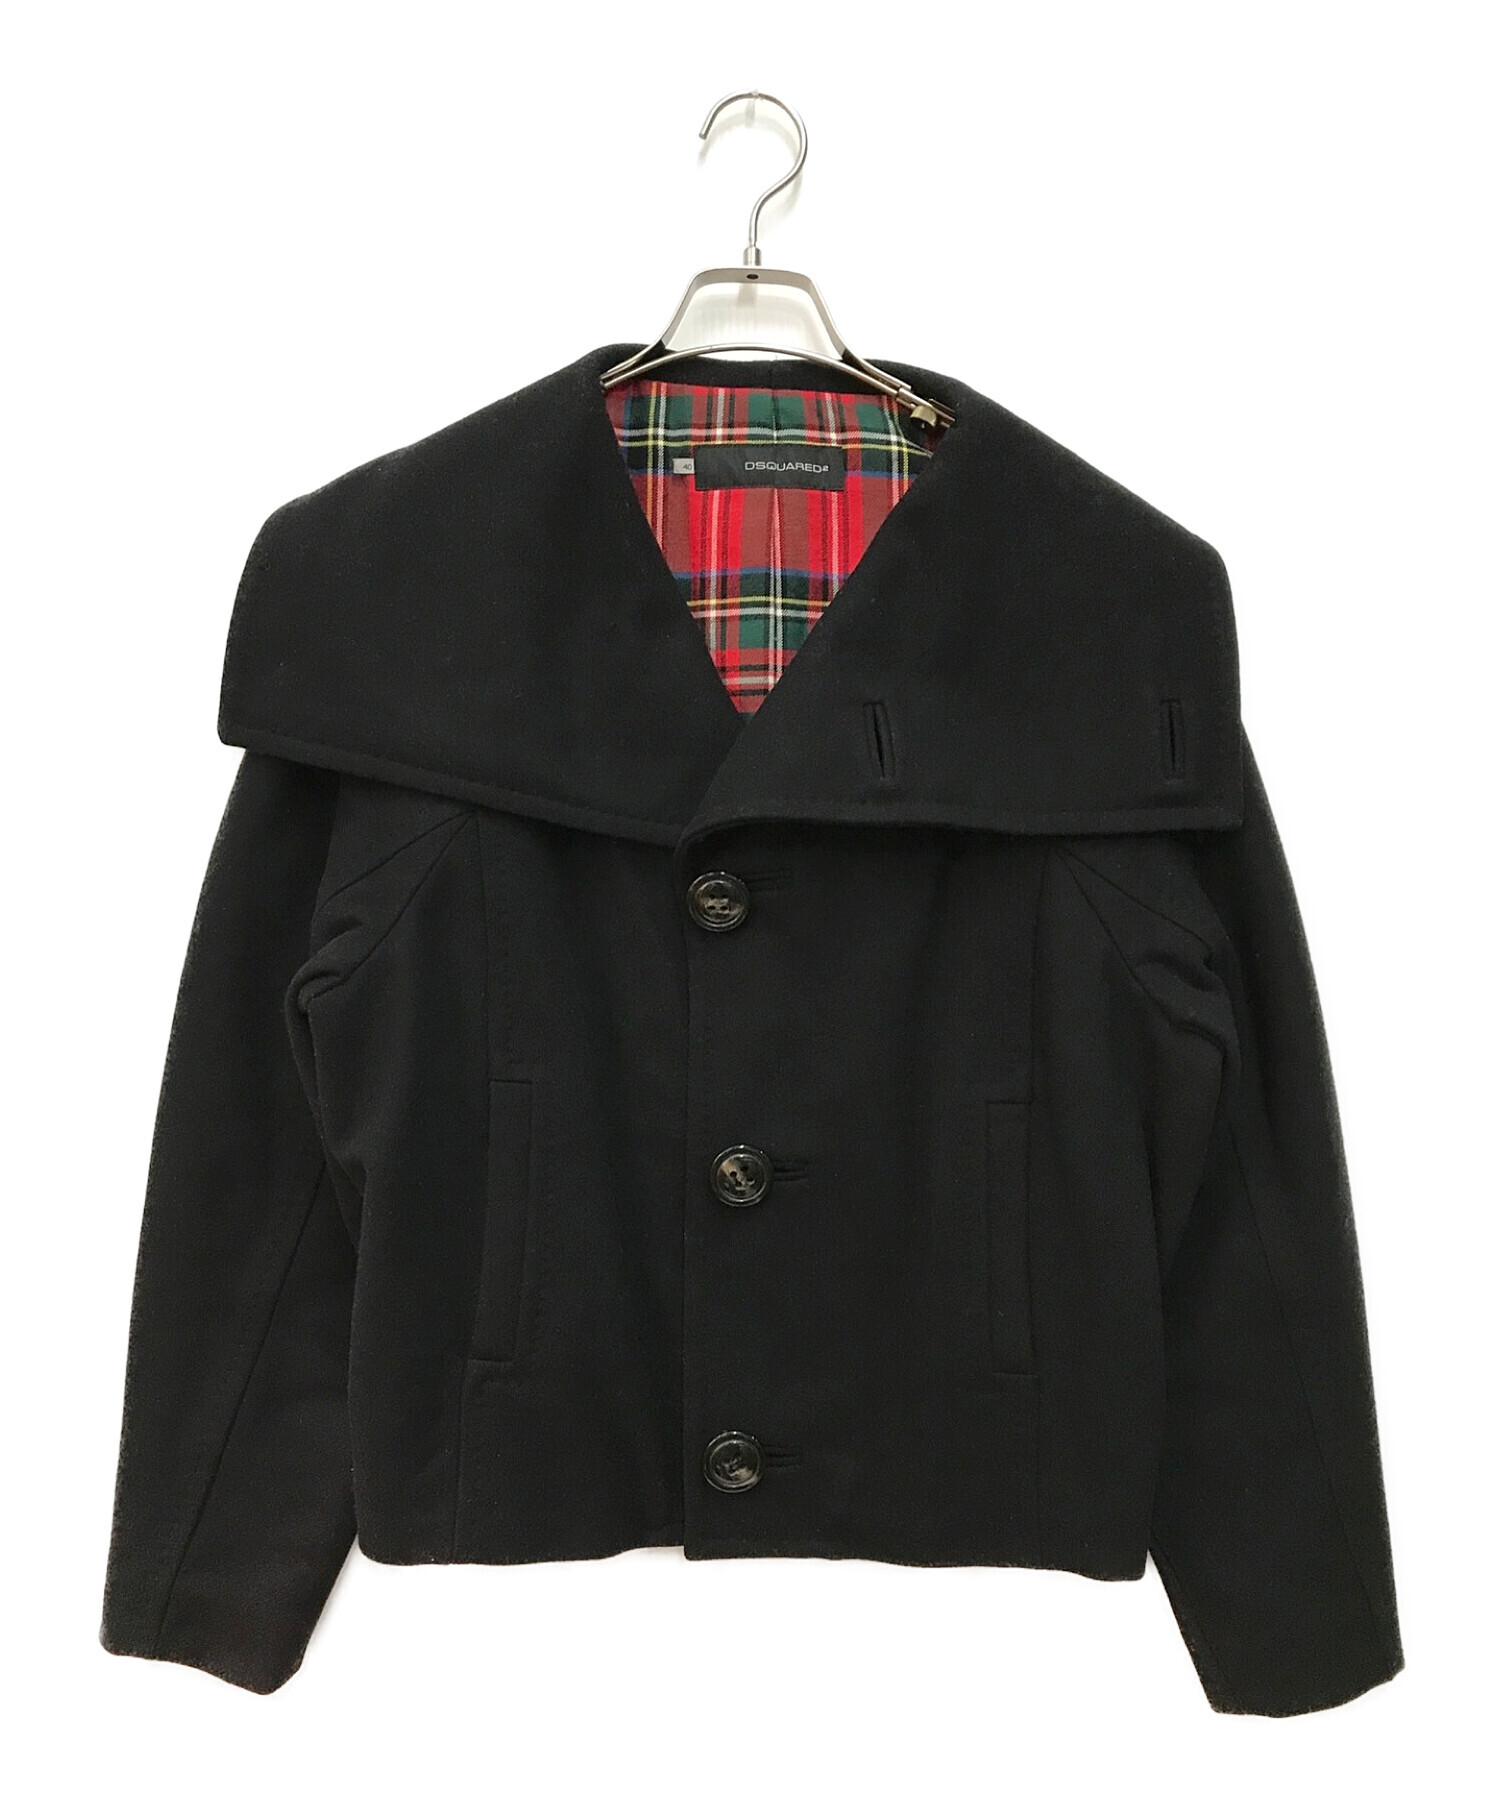 DSQUARED2 (ディースクエアード) ウールジャケット ブラック サイズ:L